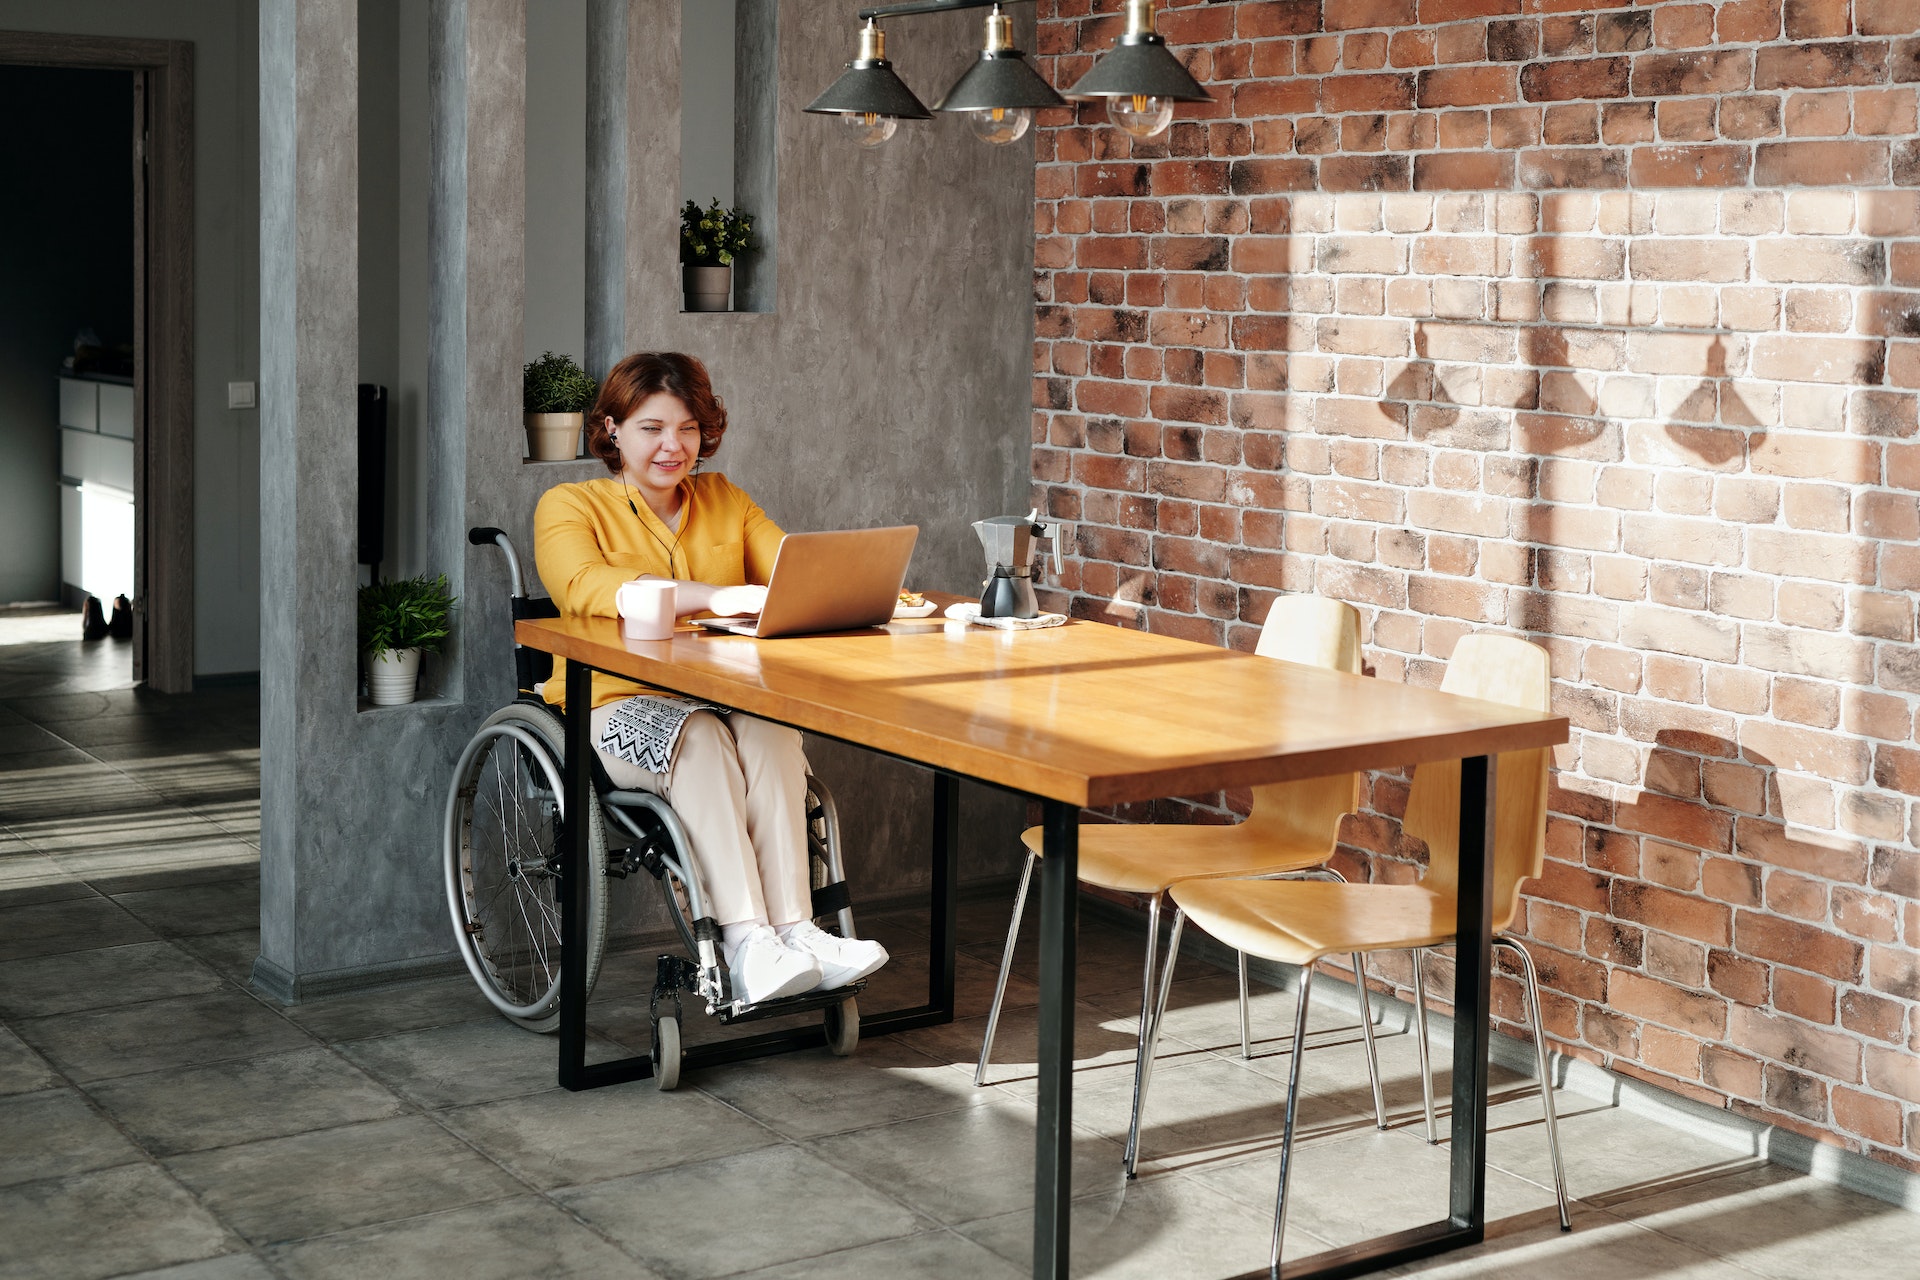 Emploi des personnes handicapées : une amélioration significative, mais encore des défis à relever